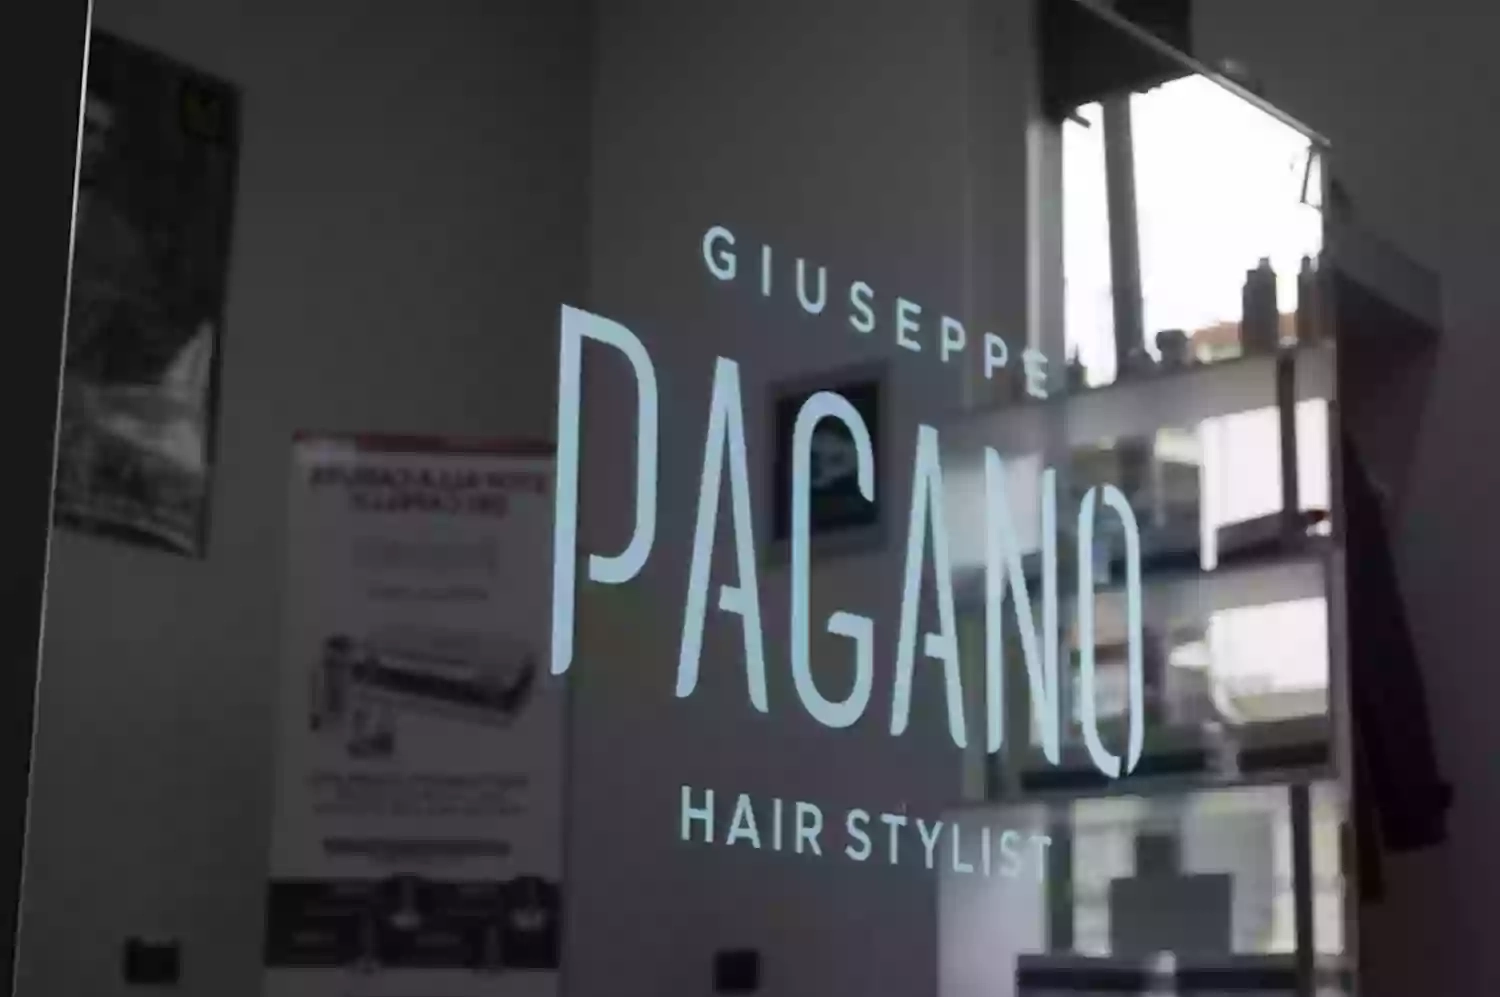 Giuseppe Pagano Hair Stylist